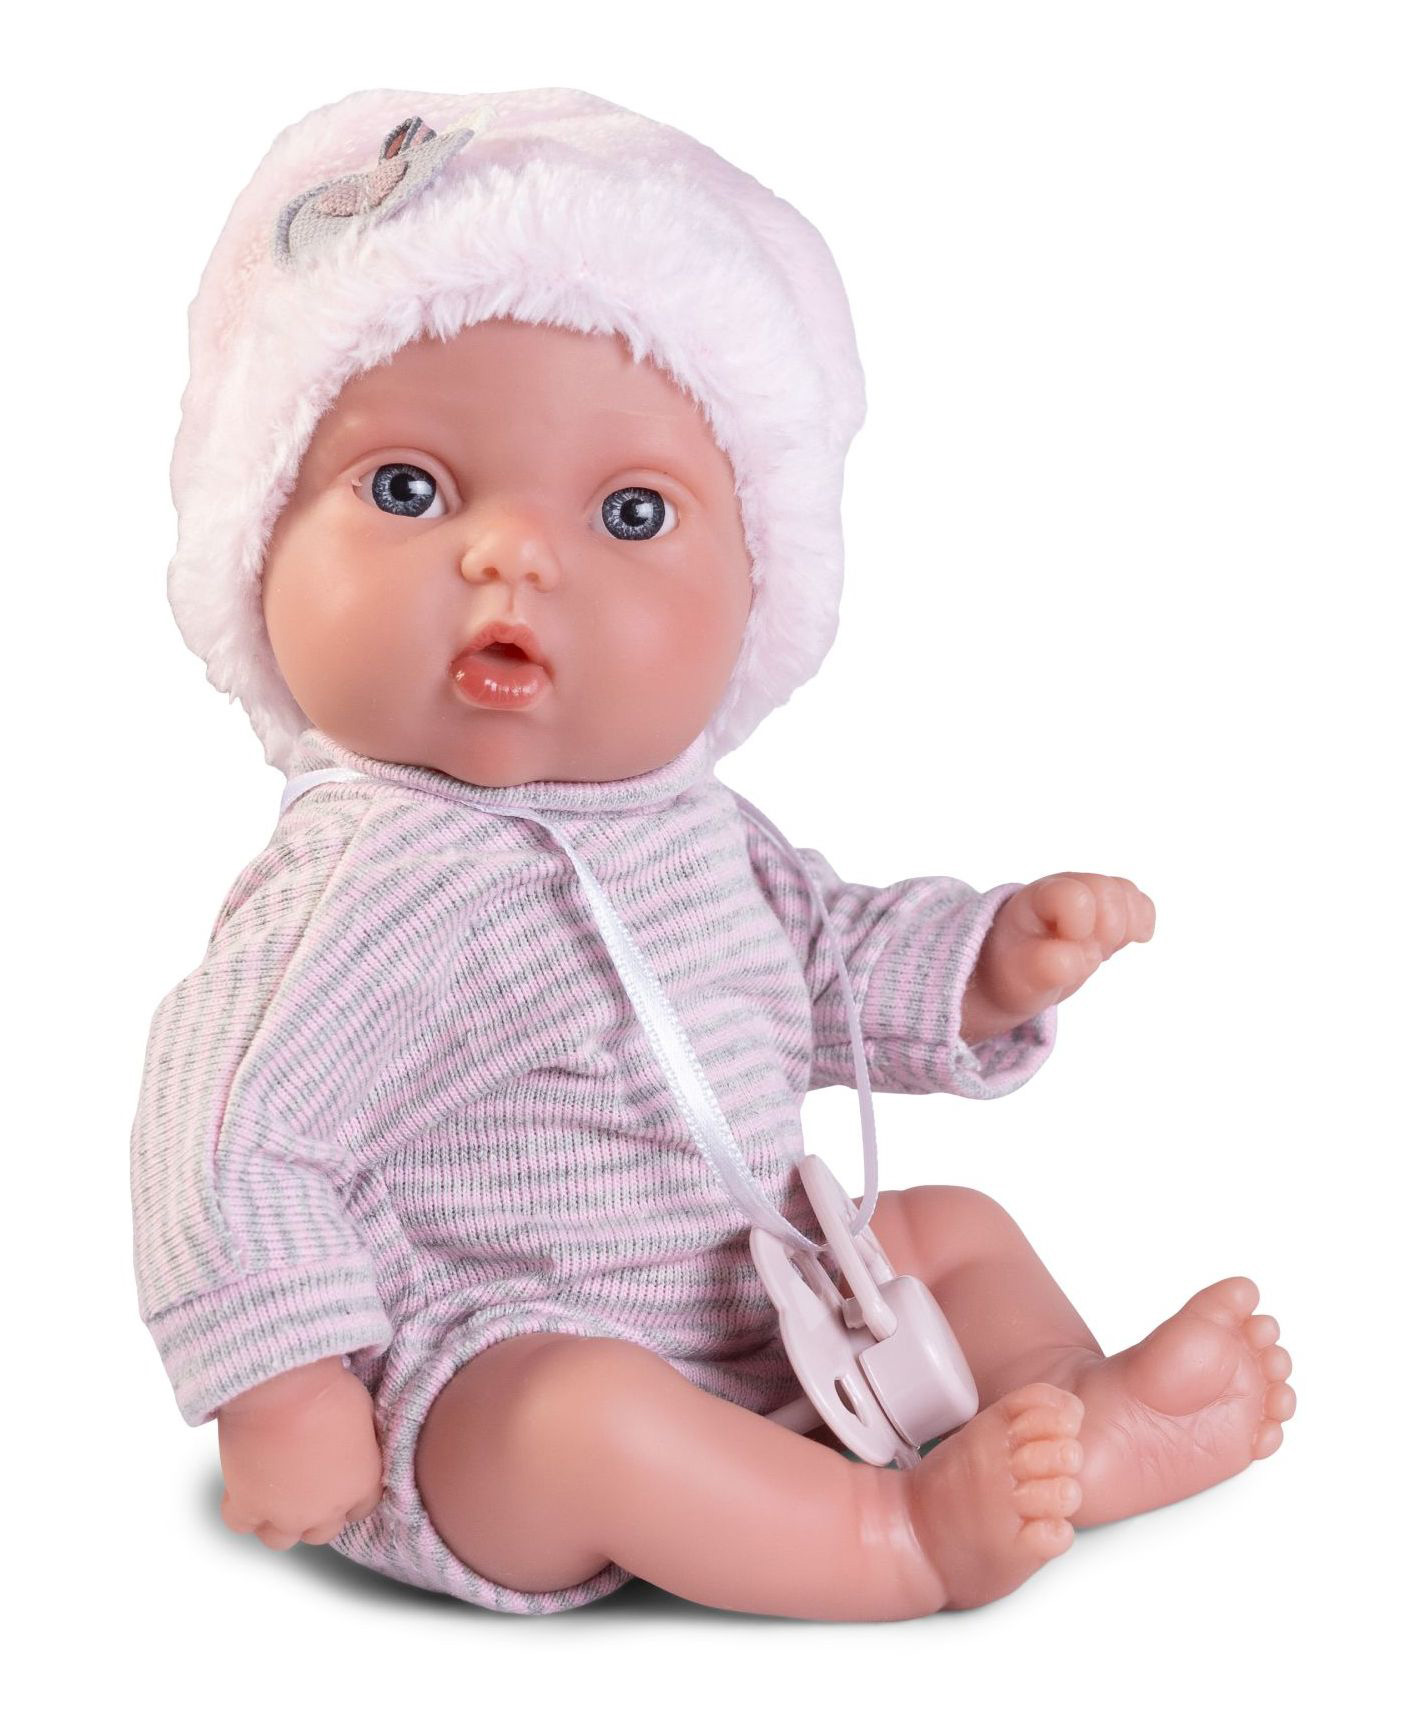 Rappa Antonio Juan 85316 Picolín -  miminko s celovinylovým tělem - 21 cm